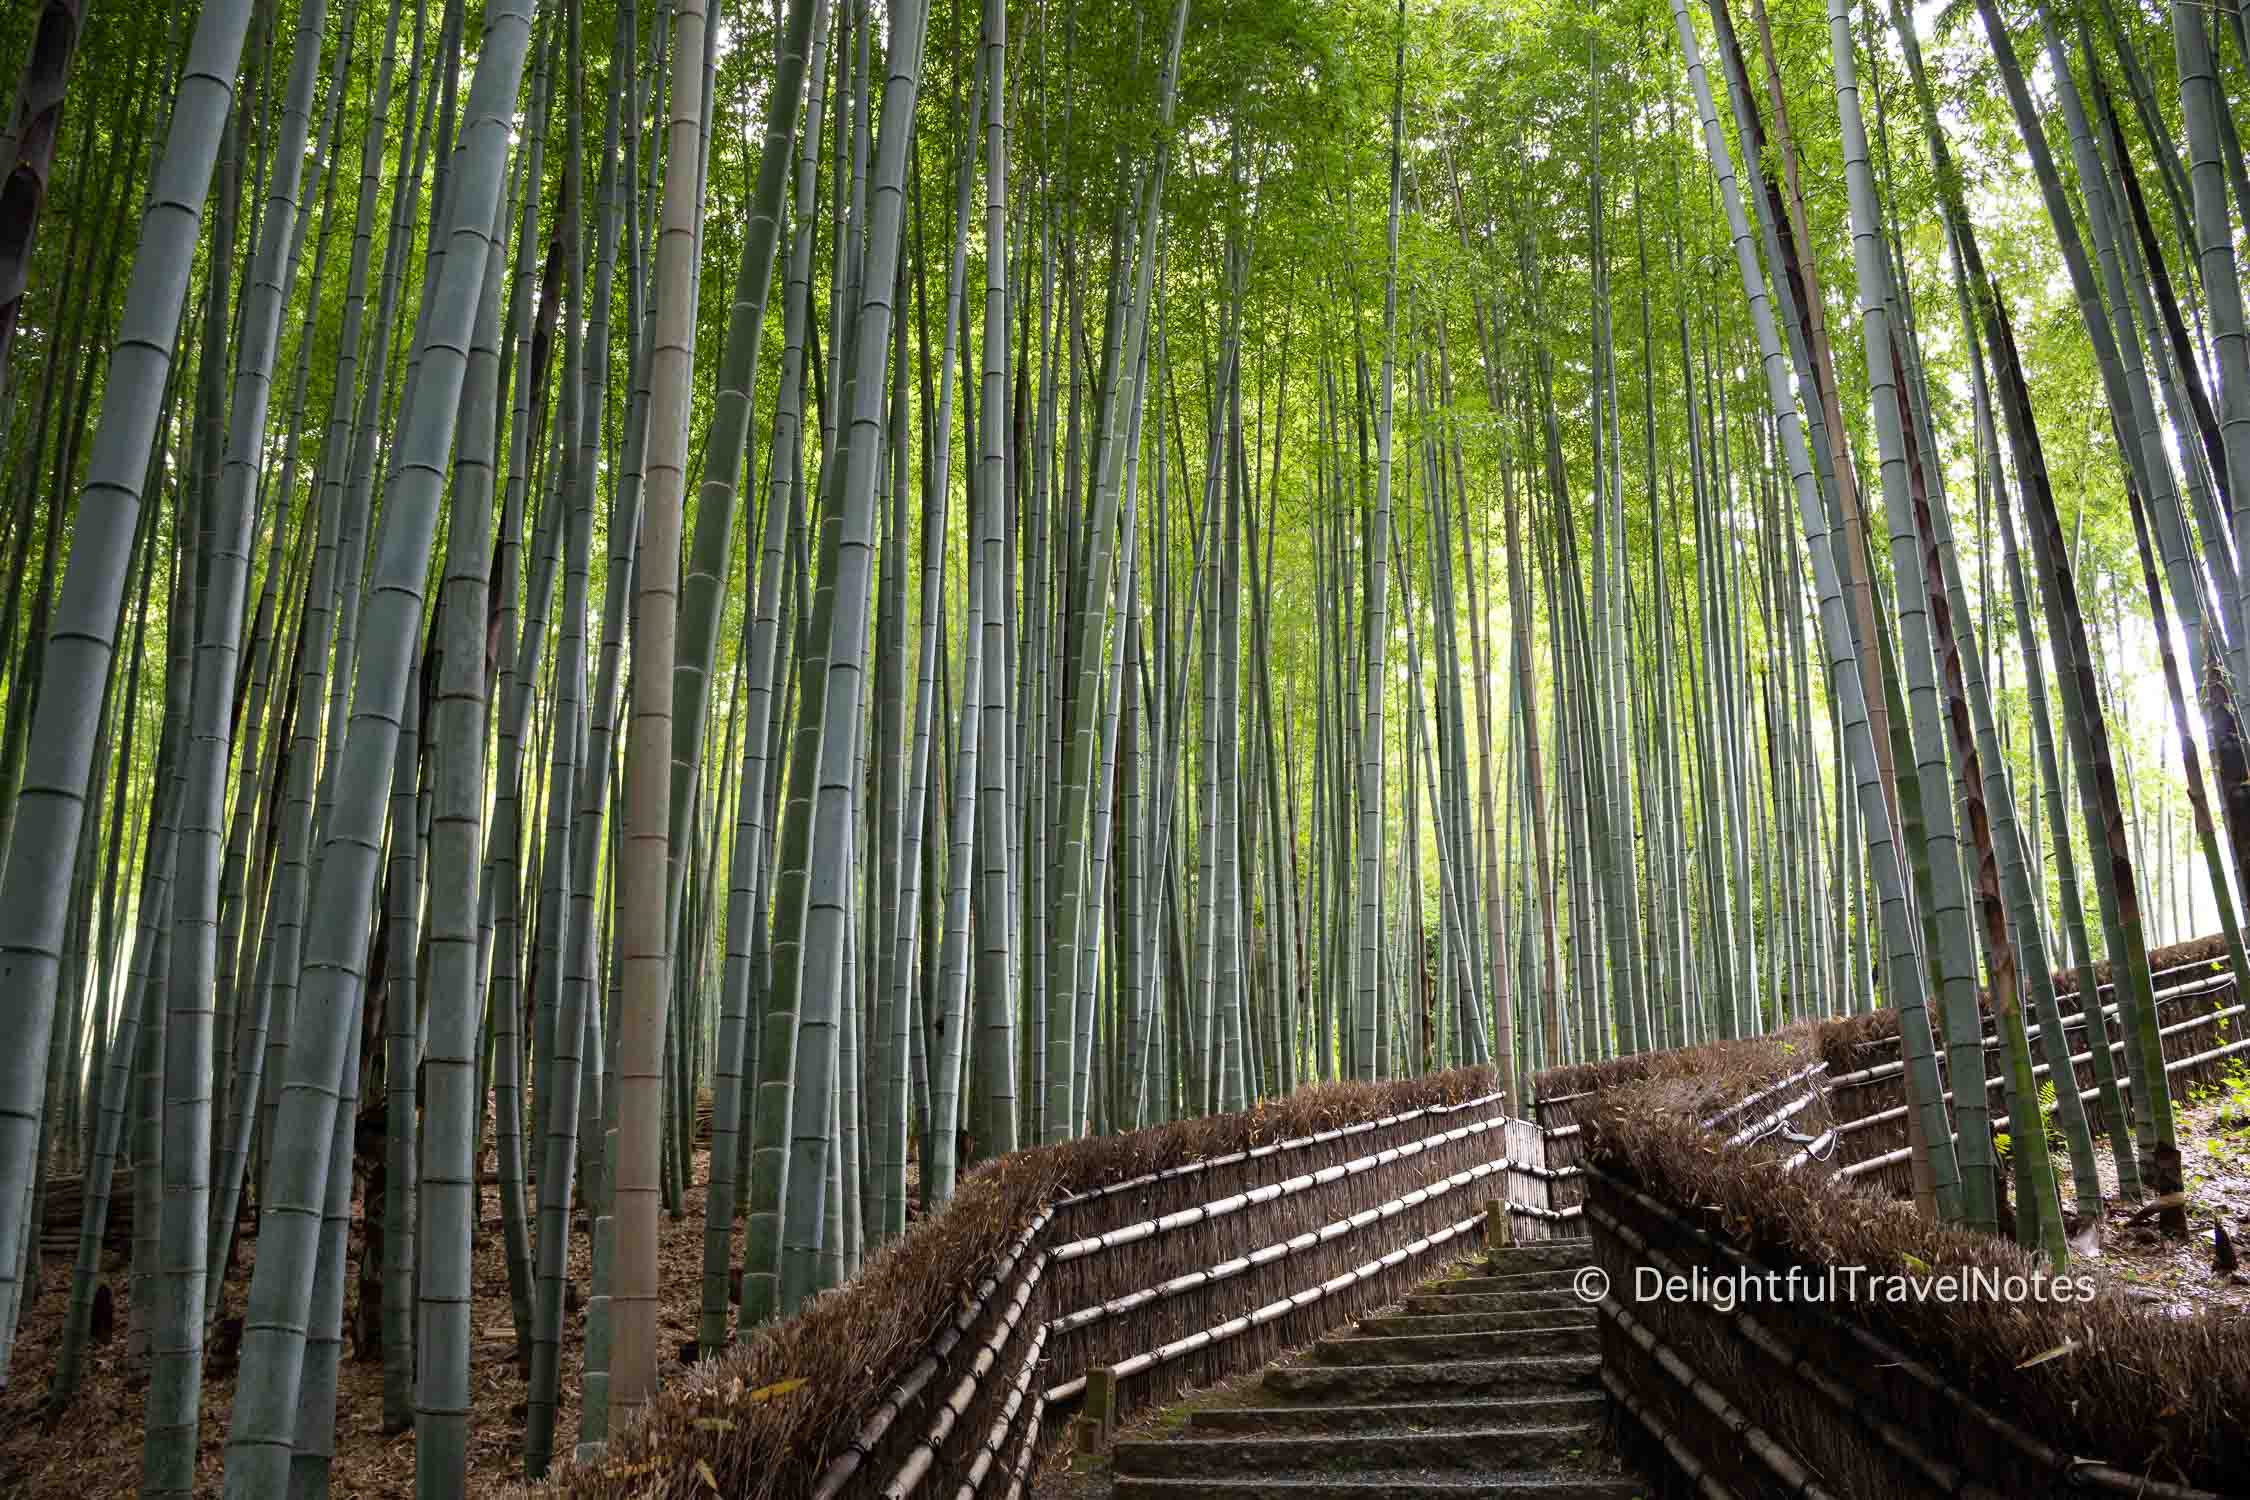 Bamboo Groves at Adashino Nenbutsu-ji temple in Kyoto.